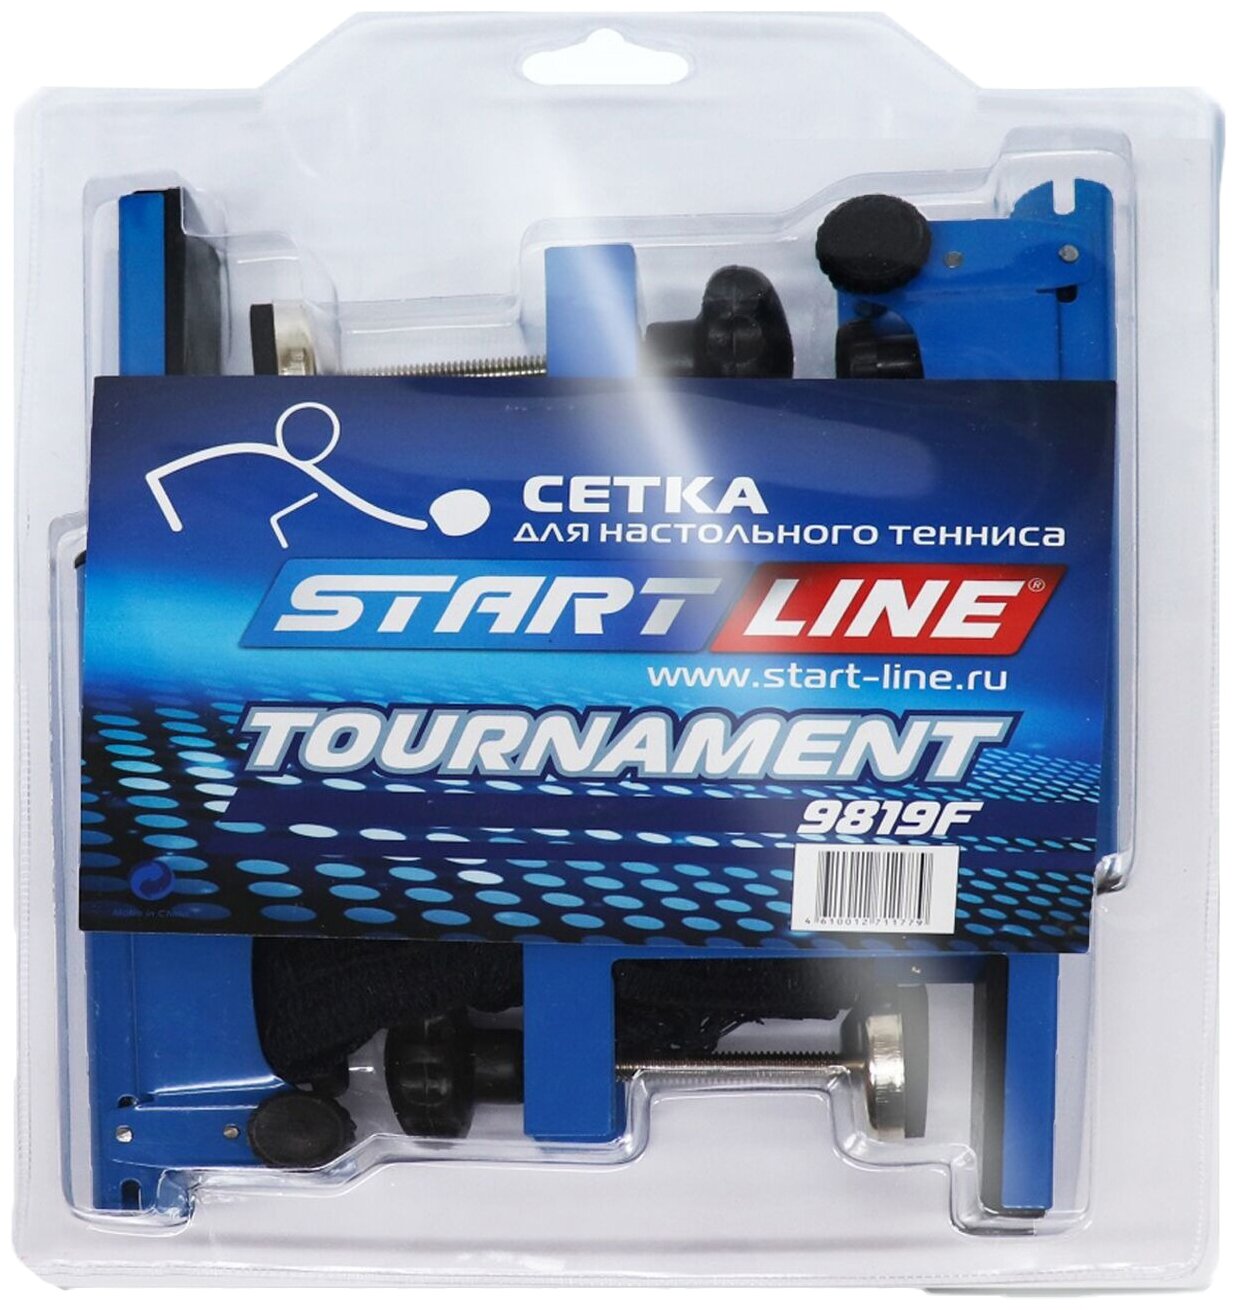 Профессиональная турнирная сетка для настольного тенниса Start Line TOURNAMENT